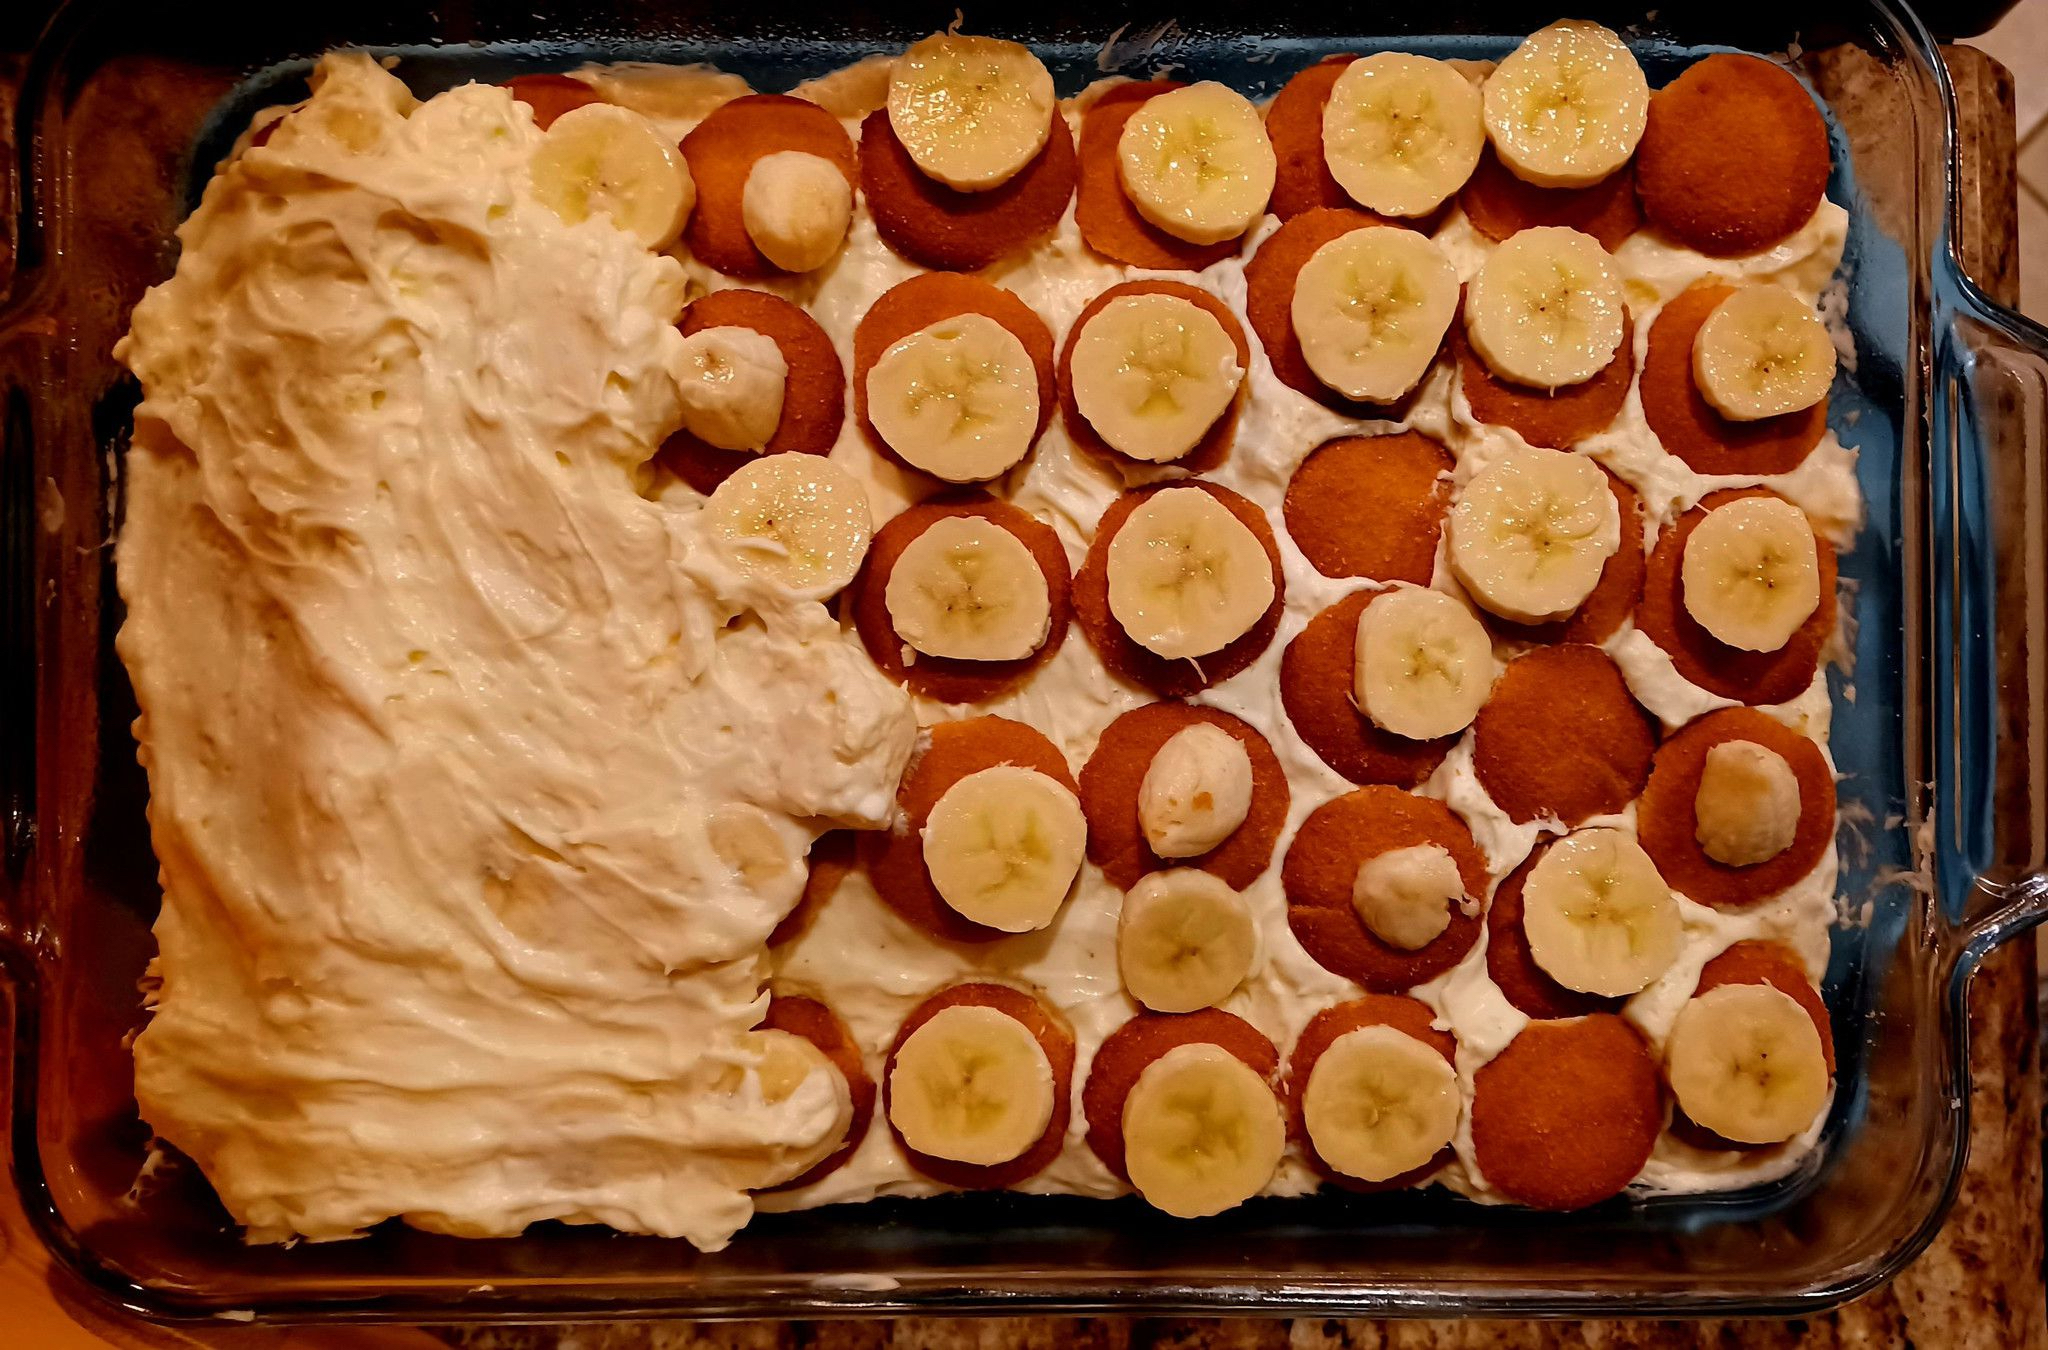 Making Banana Pudding